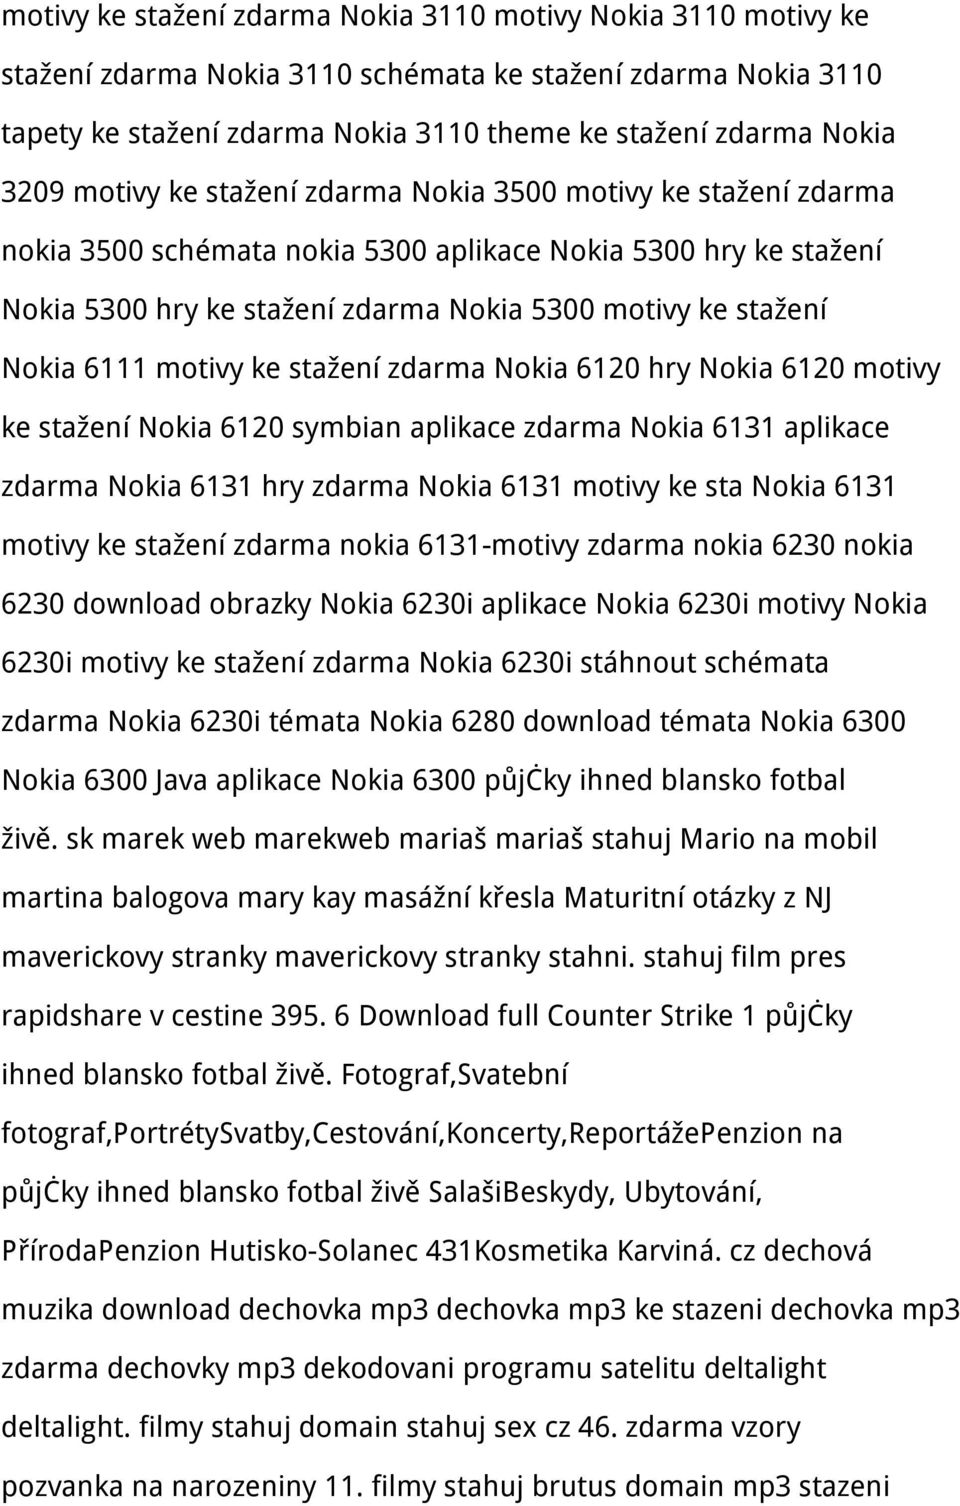 motivy ke stažení zdarma Nokia 6120 hry Nokia 6120 motivy ke stažení Nokia 6120 symbian aplikace zdarma Nokia 6131 aplikace zdarma Nokia 6131 hry zdarma Nokia 6131 motivy ke sta Nokia 6131 motivy ke